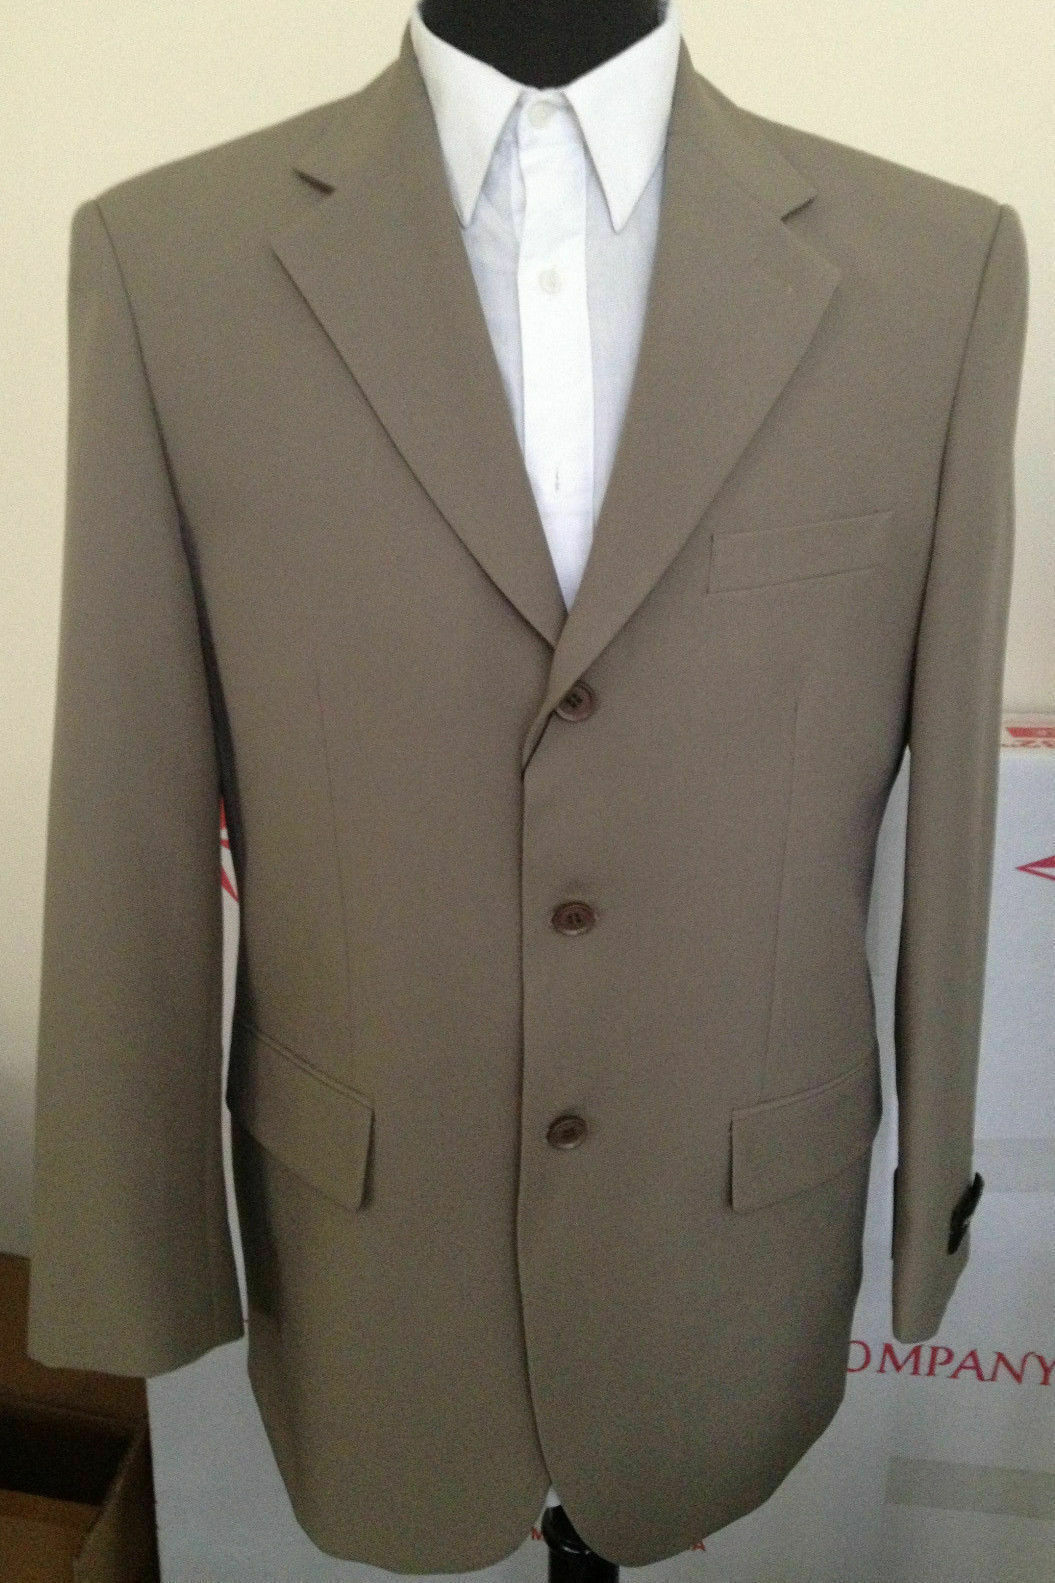 New Men's Basic Suit Single Breasted 3 Button 14 Unique Colors Size 38R~60L Milano Moda or Fortino Landi - фотография #11